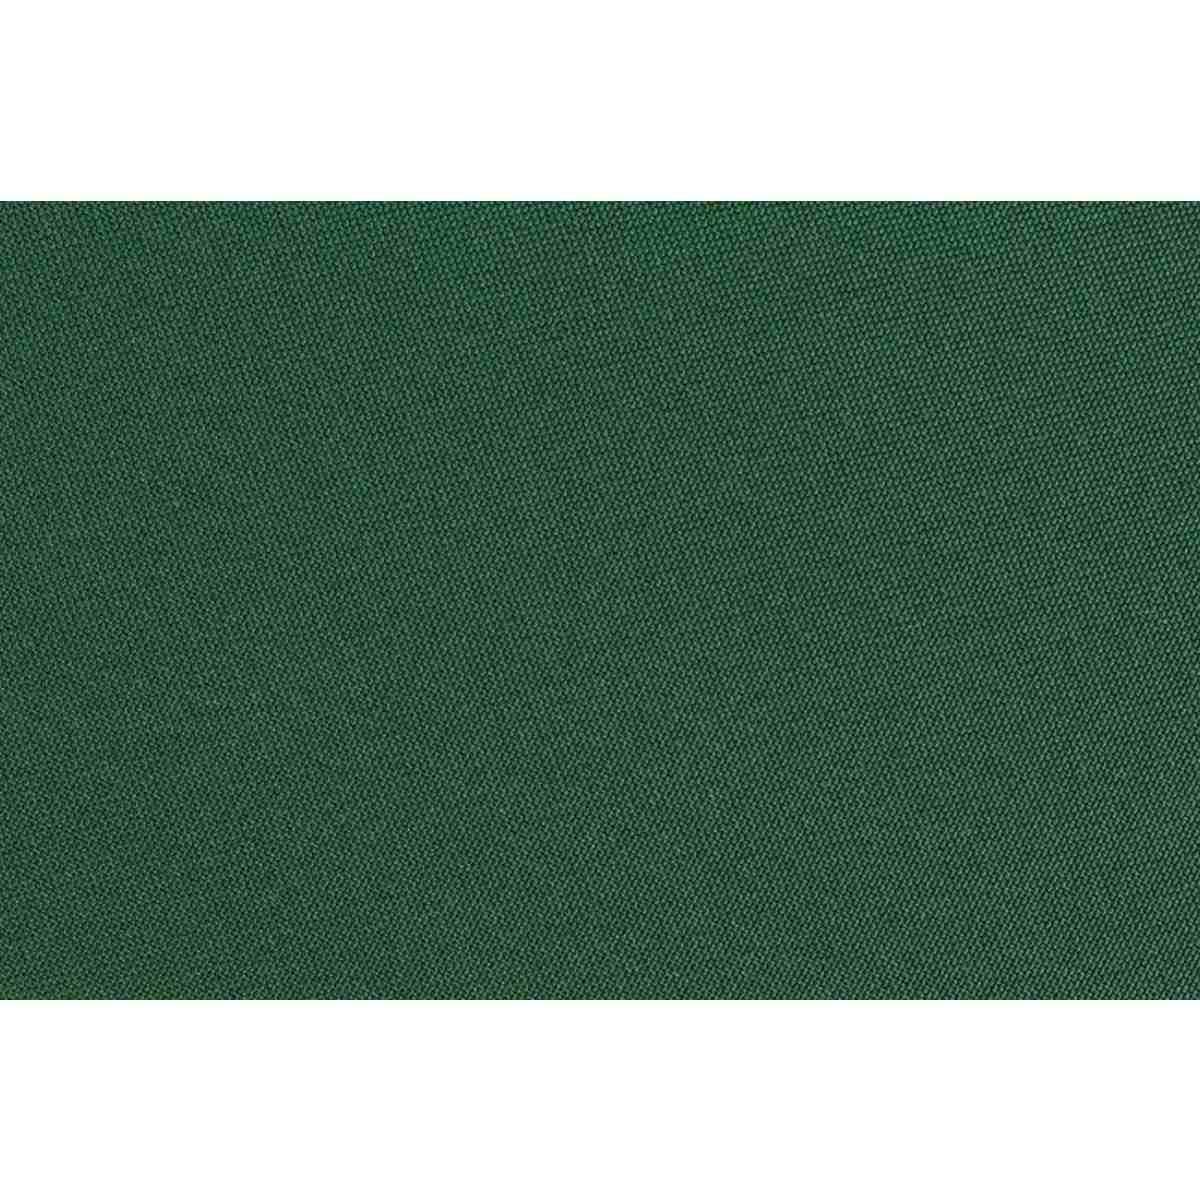 Cuscino Poly180 Verde Scuro Lettino